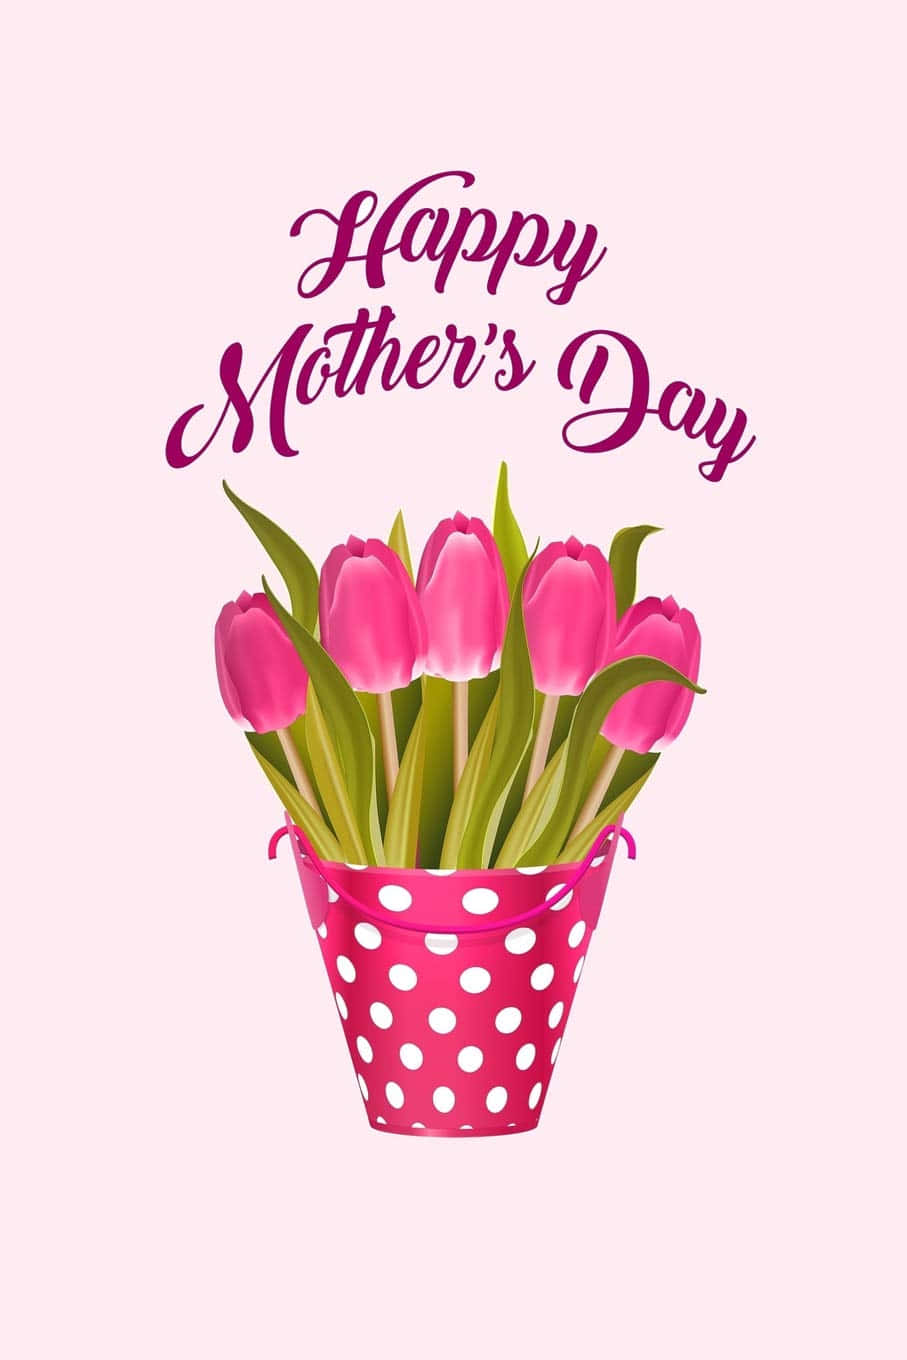 Demosgracias Y Apreciemos El Amor De Todas Las Madres En Este Día De La Madre.